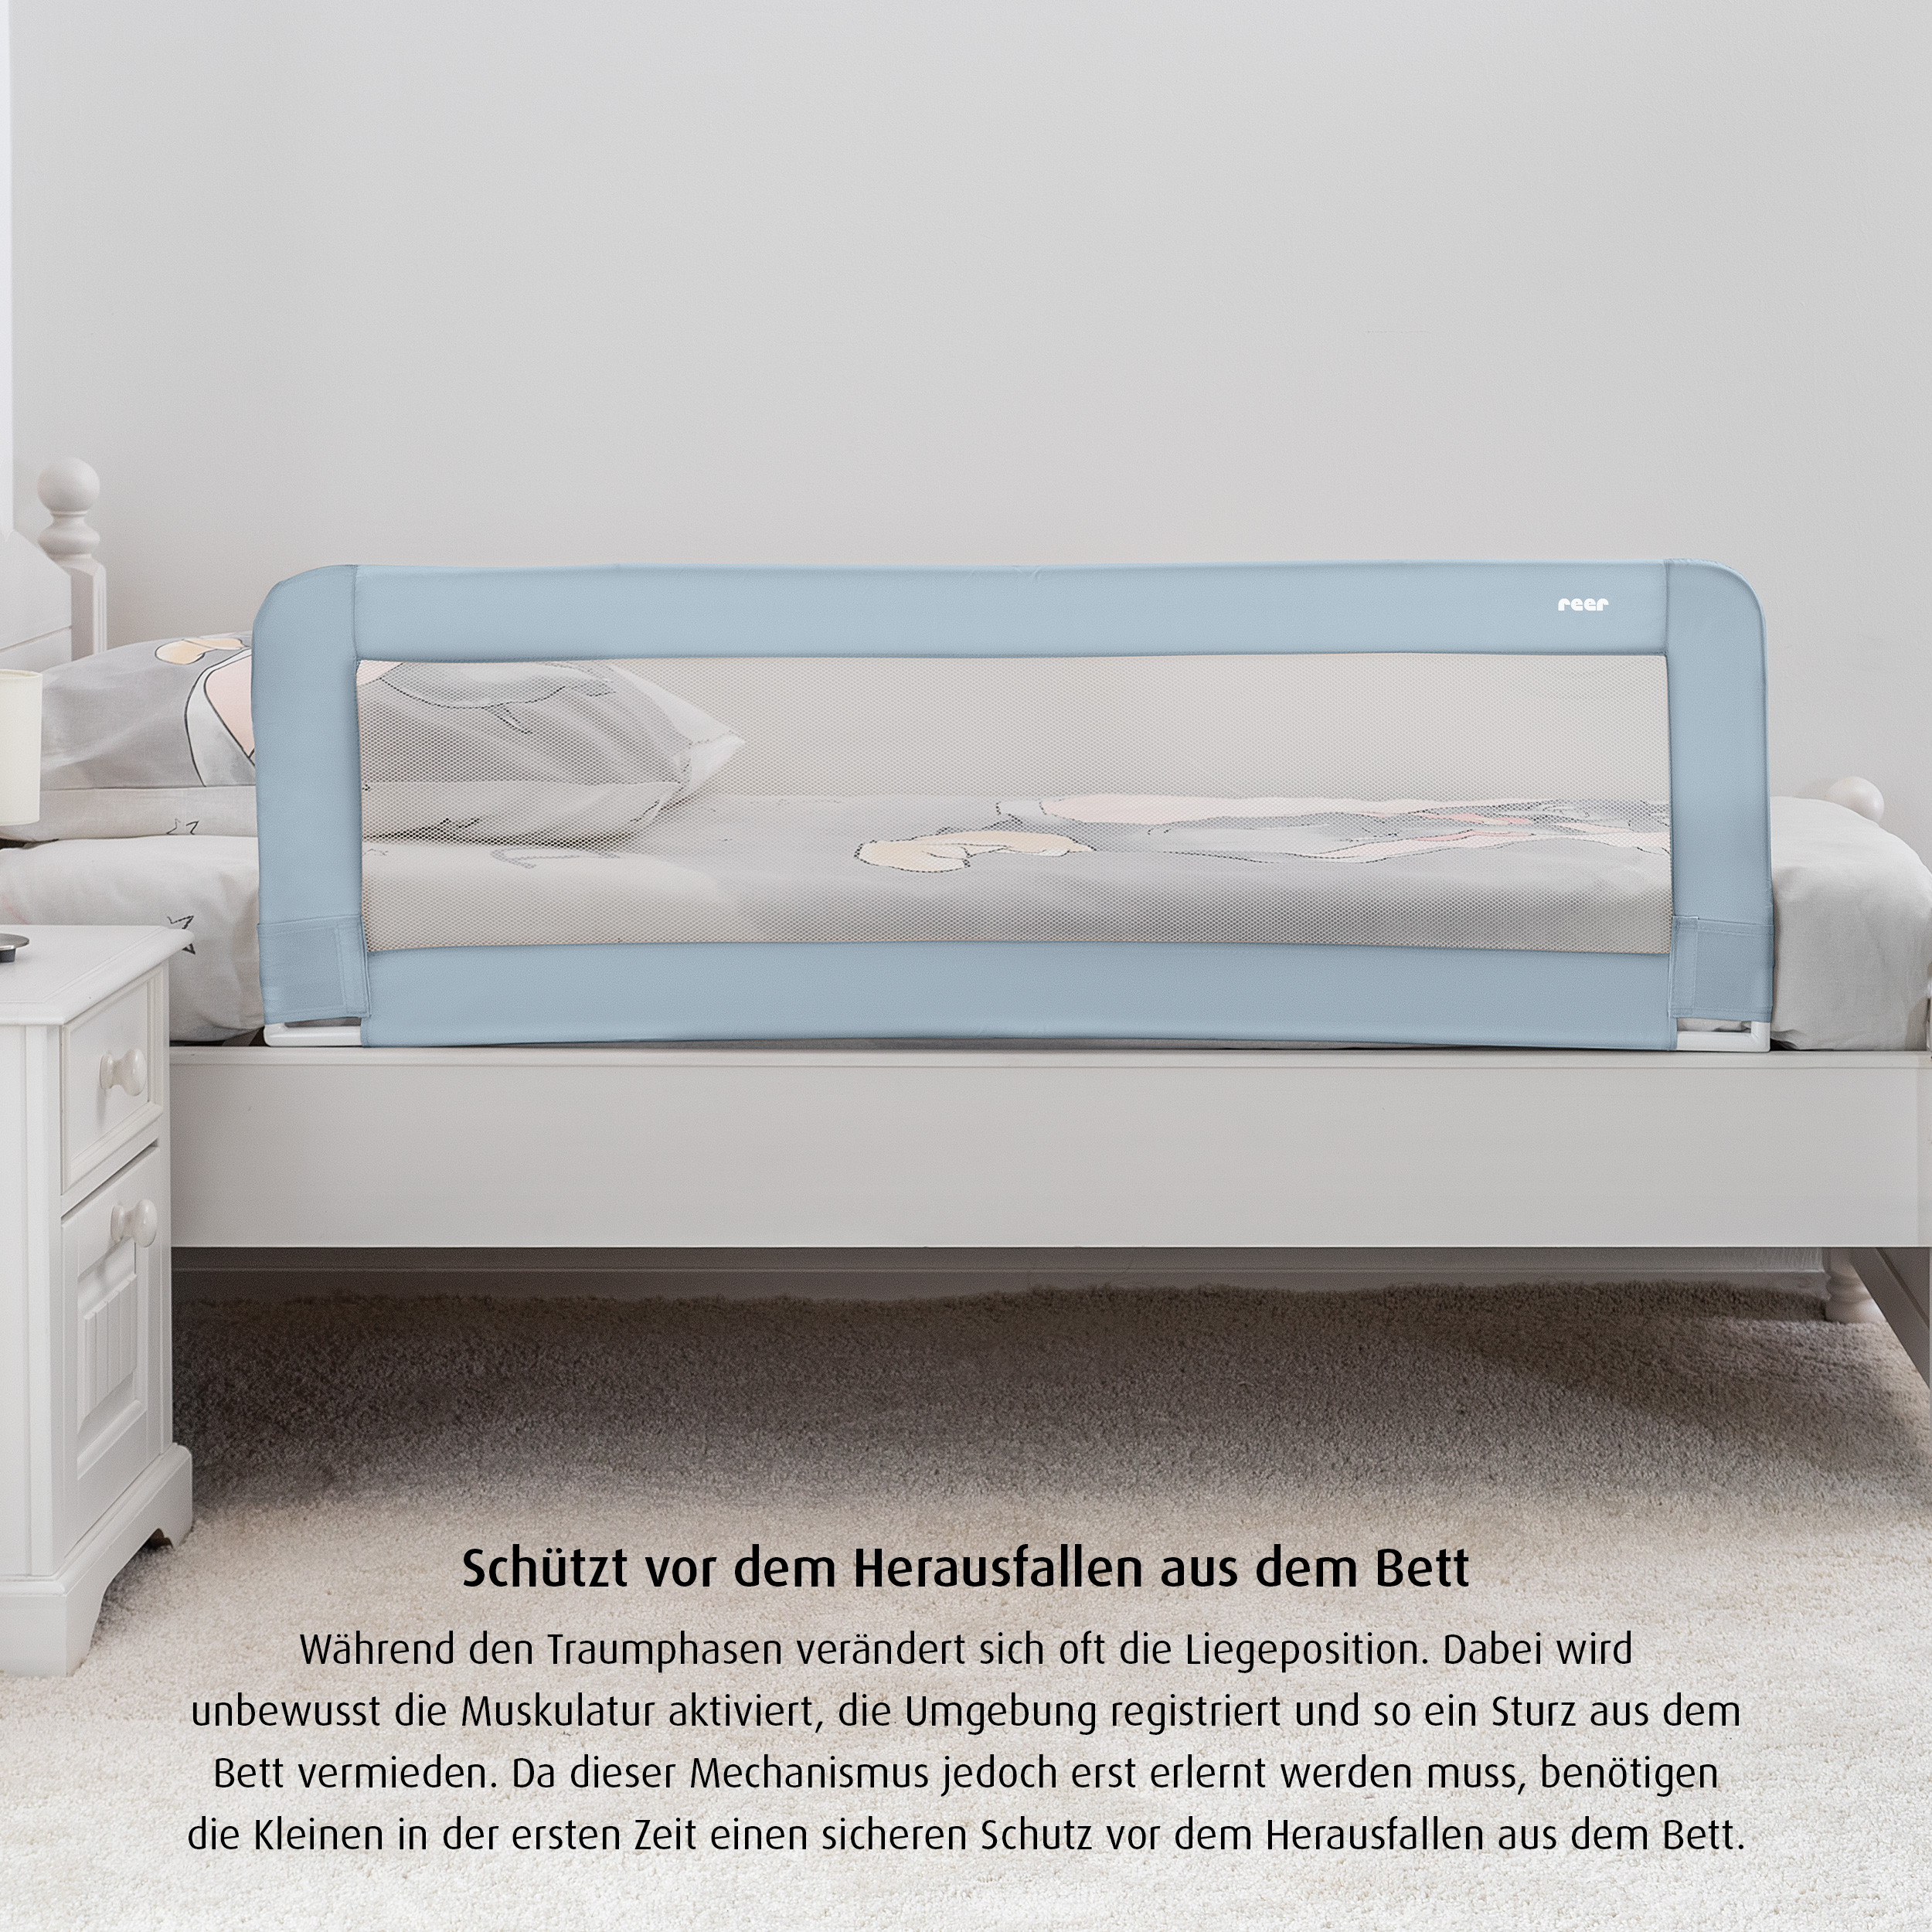 Sleep'n Keep Bettgitter 150 cm, blaugrau - geprüfte B-Ware